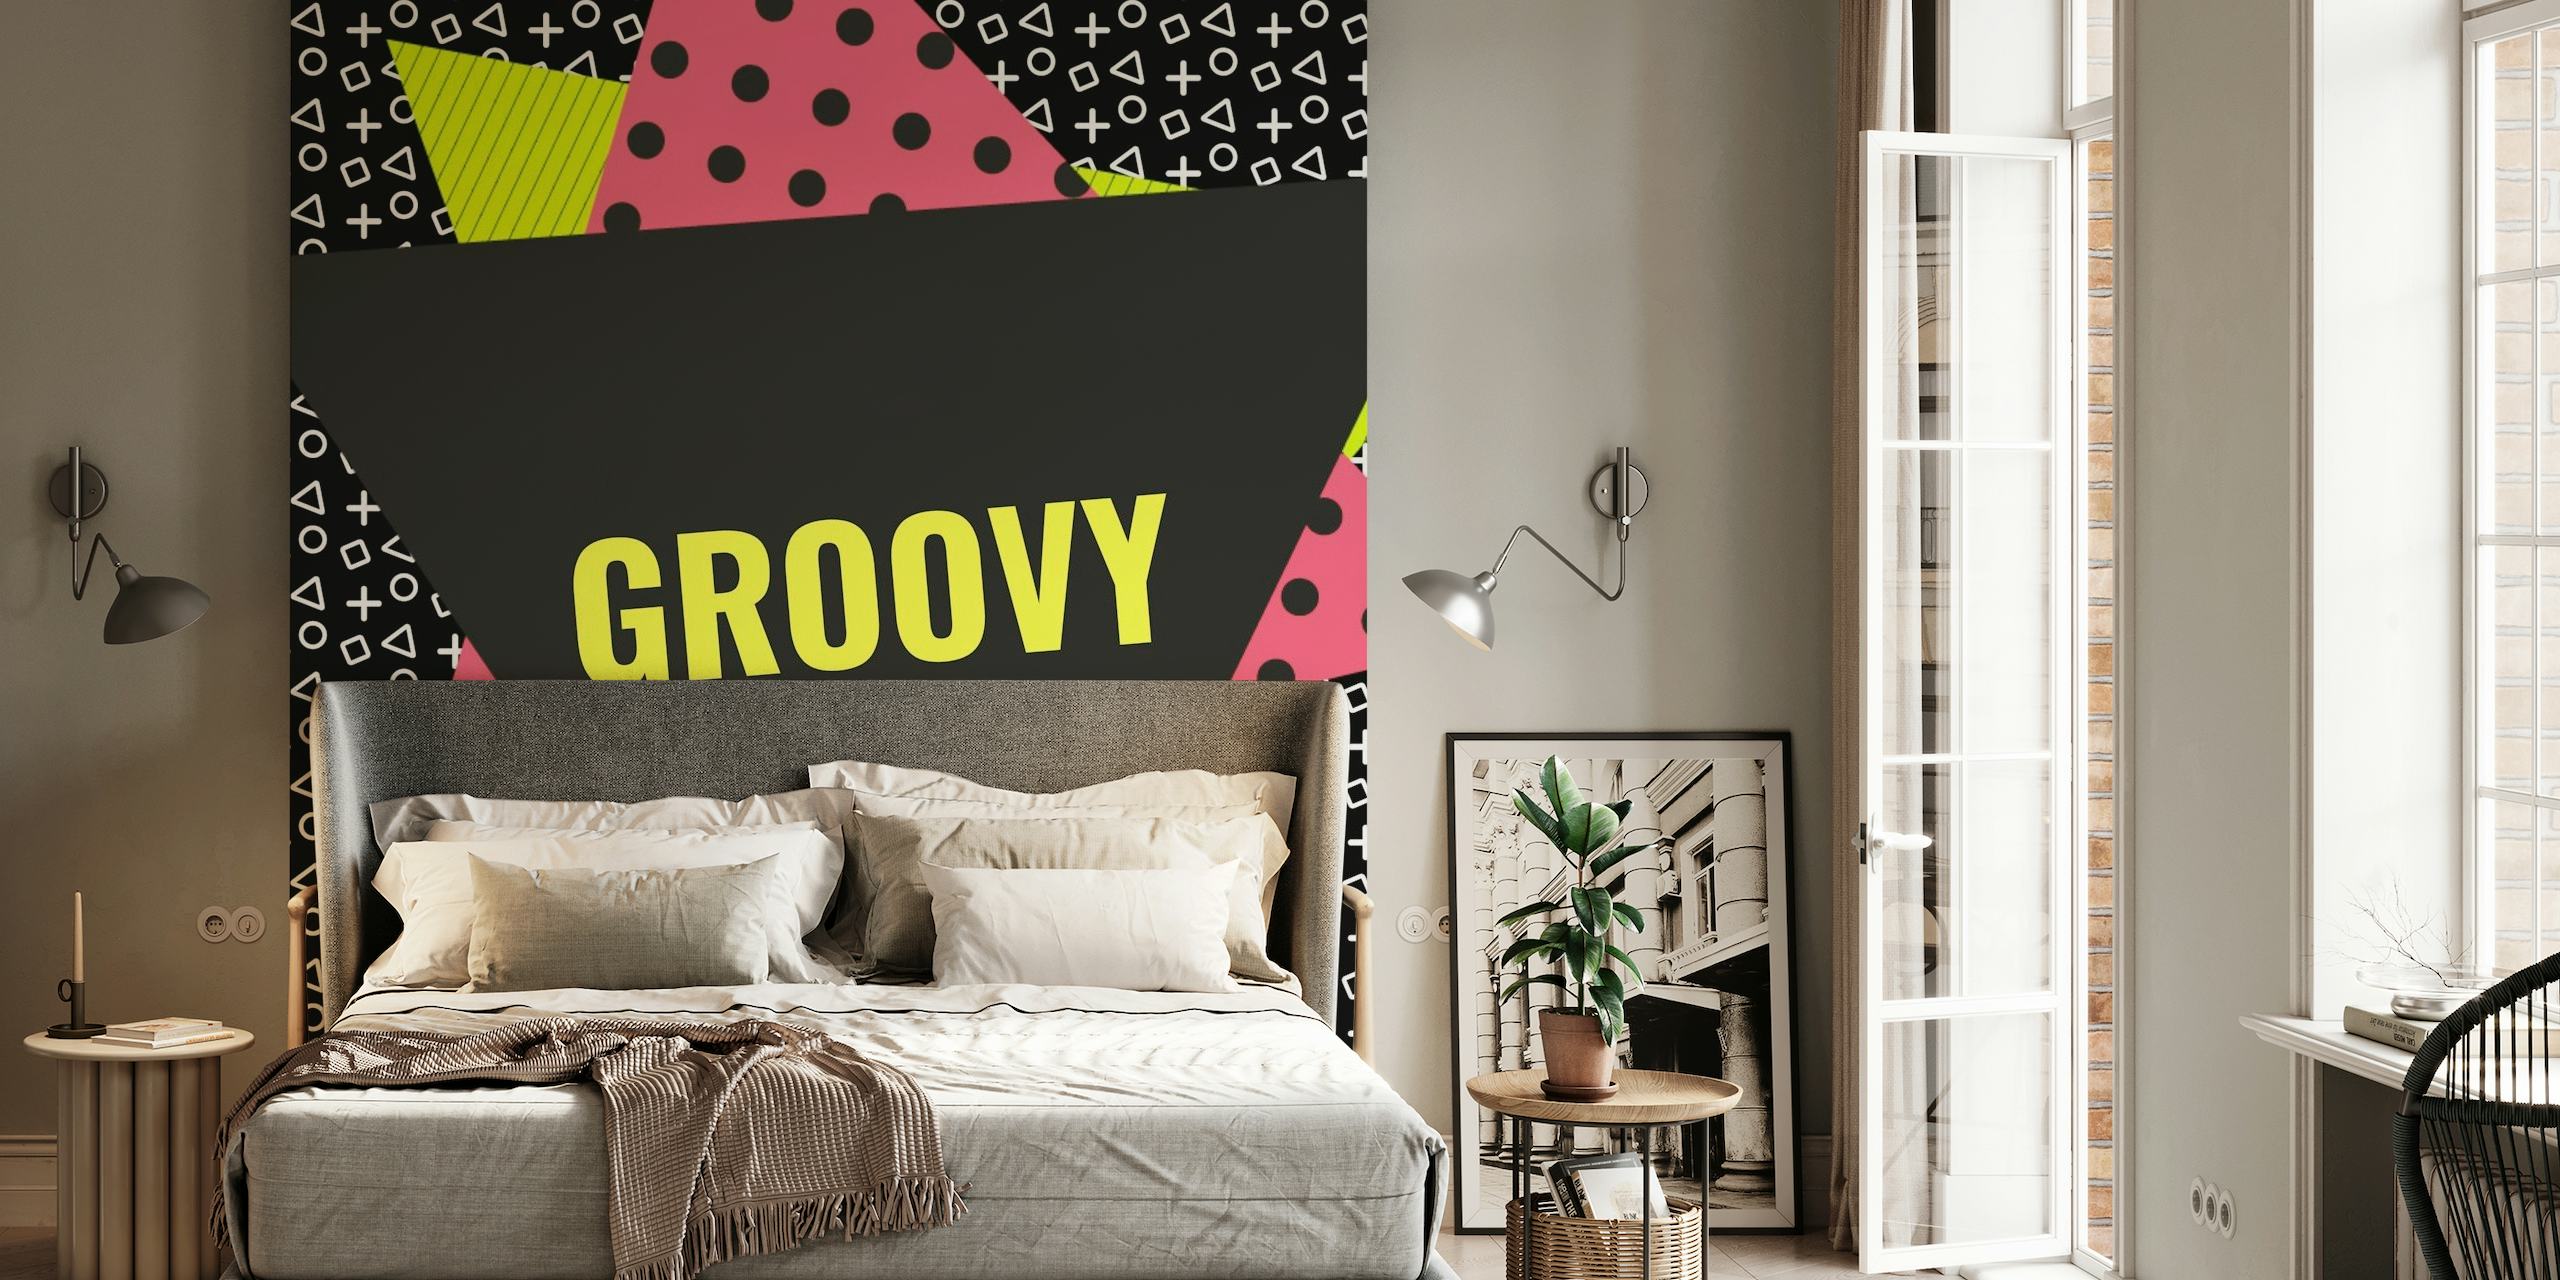 Memphis Style Geometrisk tapet med "Groovy" text, abstrakta former och djärva färger